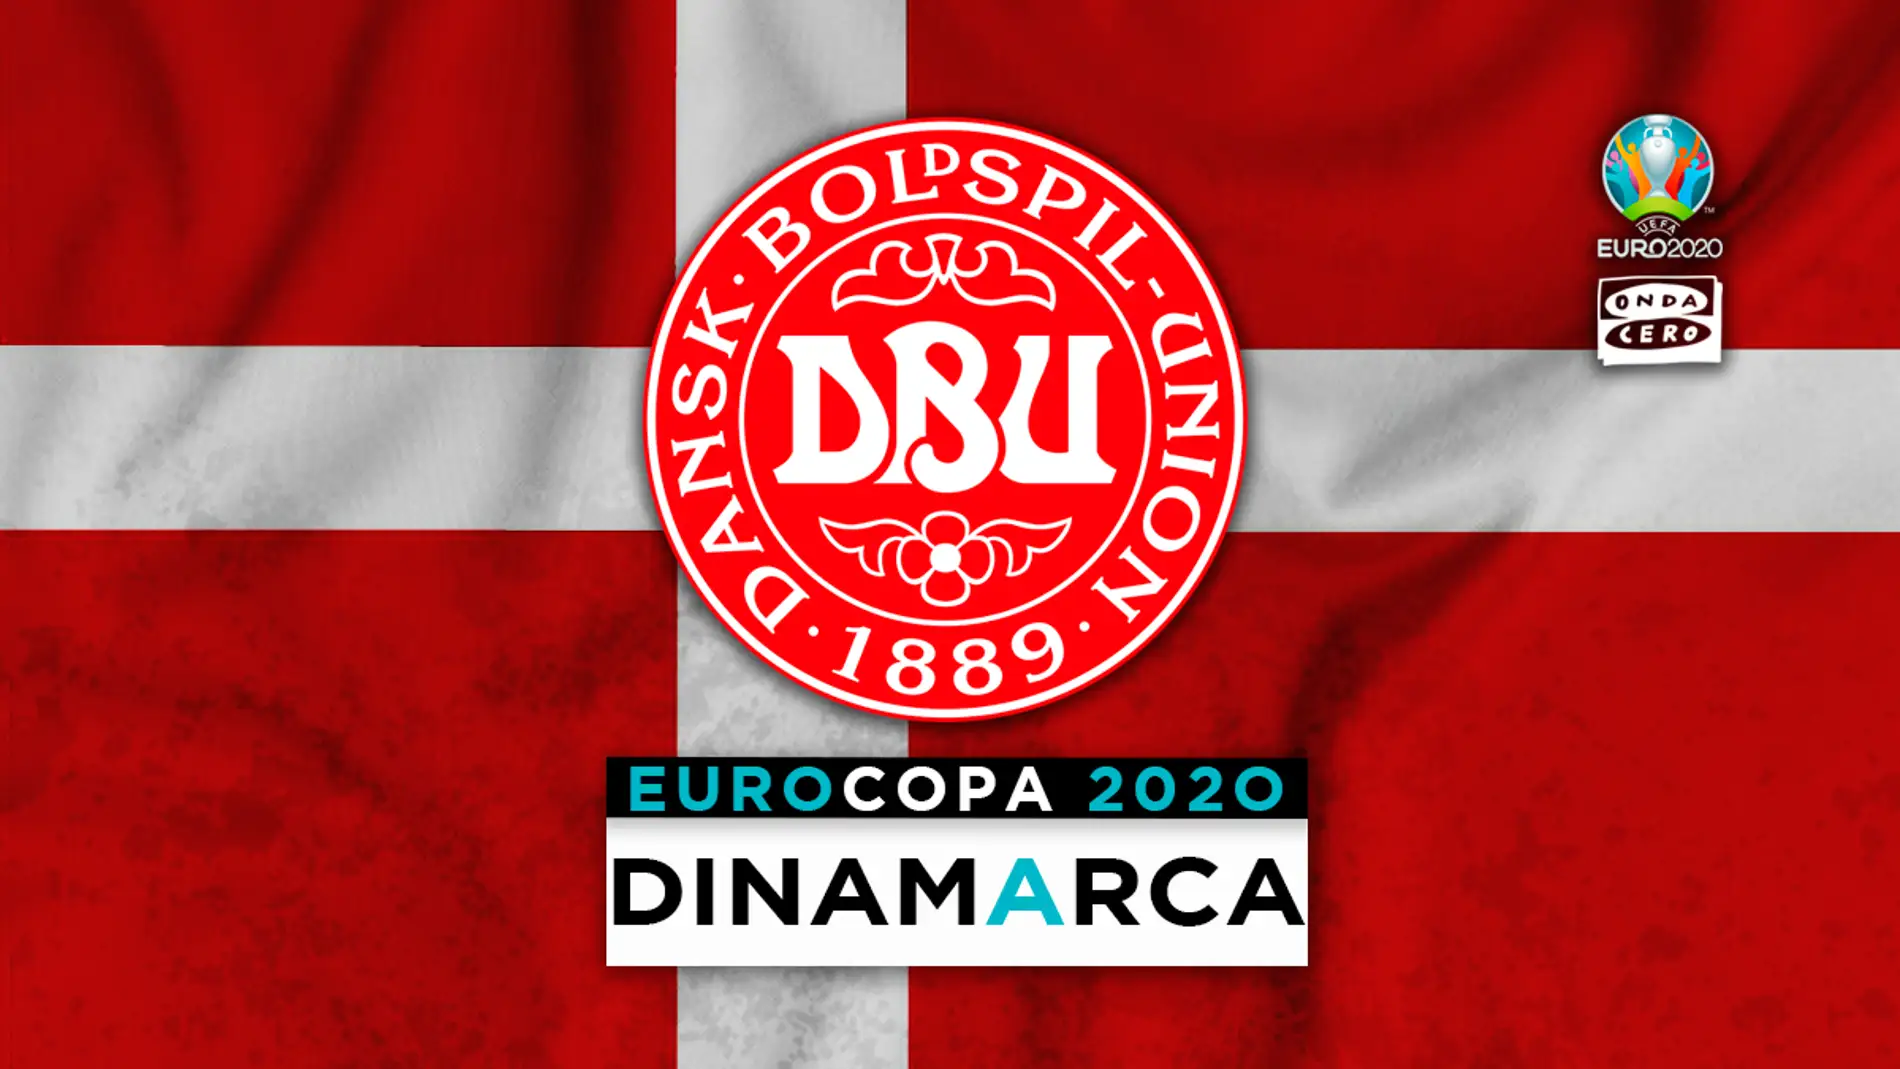 Dinamarca en la Eurocopa: alineación probable, convocatoria y lista completa de jugadores